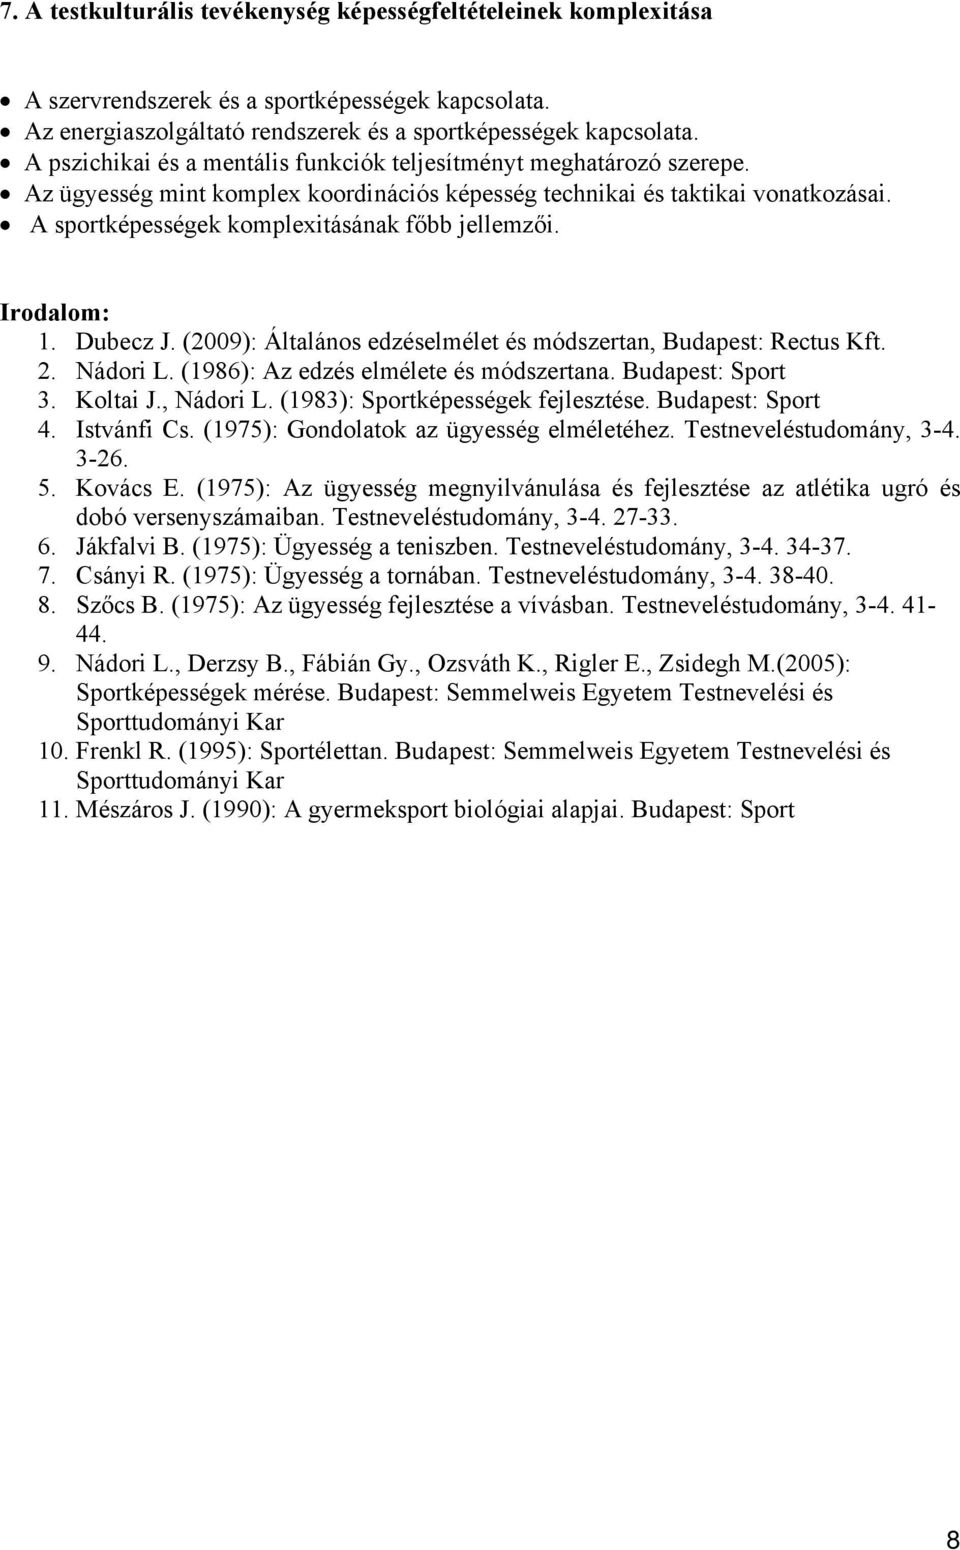 A sportképességek komplexitásának főbb jellemzői. 1. Dubecz J. (2009): Általános edzéselmélet és módszertan, Budapest: Rectus Kft. 2. Nádori L. (1986): Az edzés elmélete és módszertana.